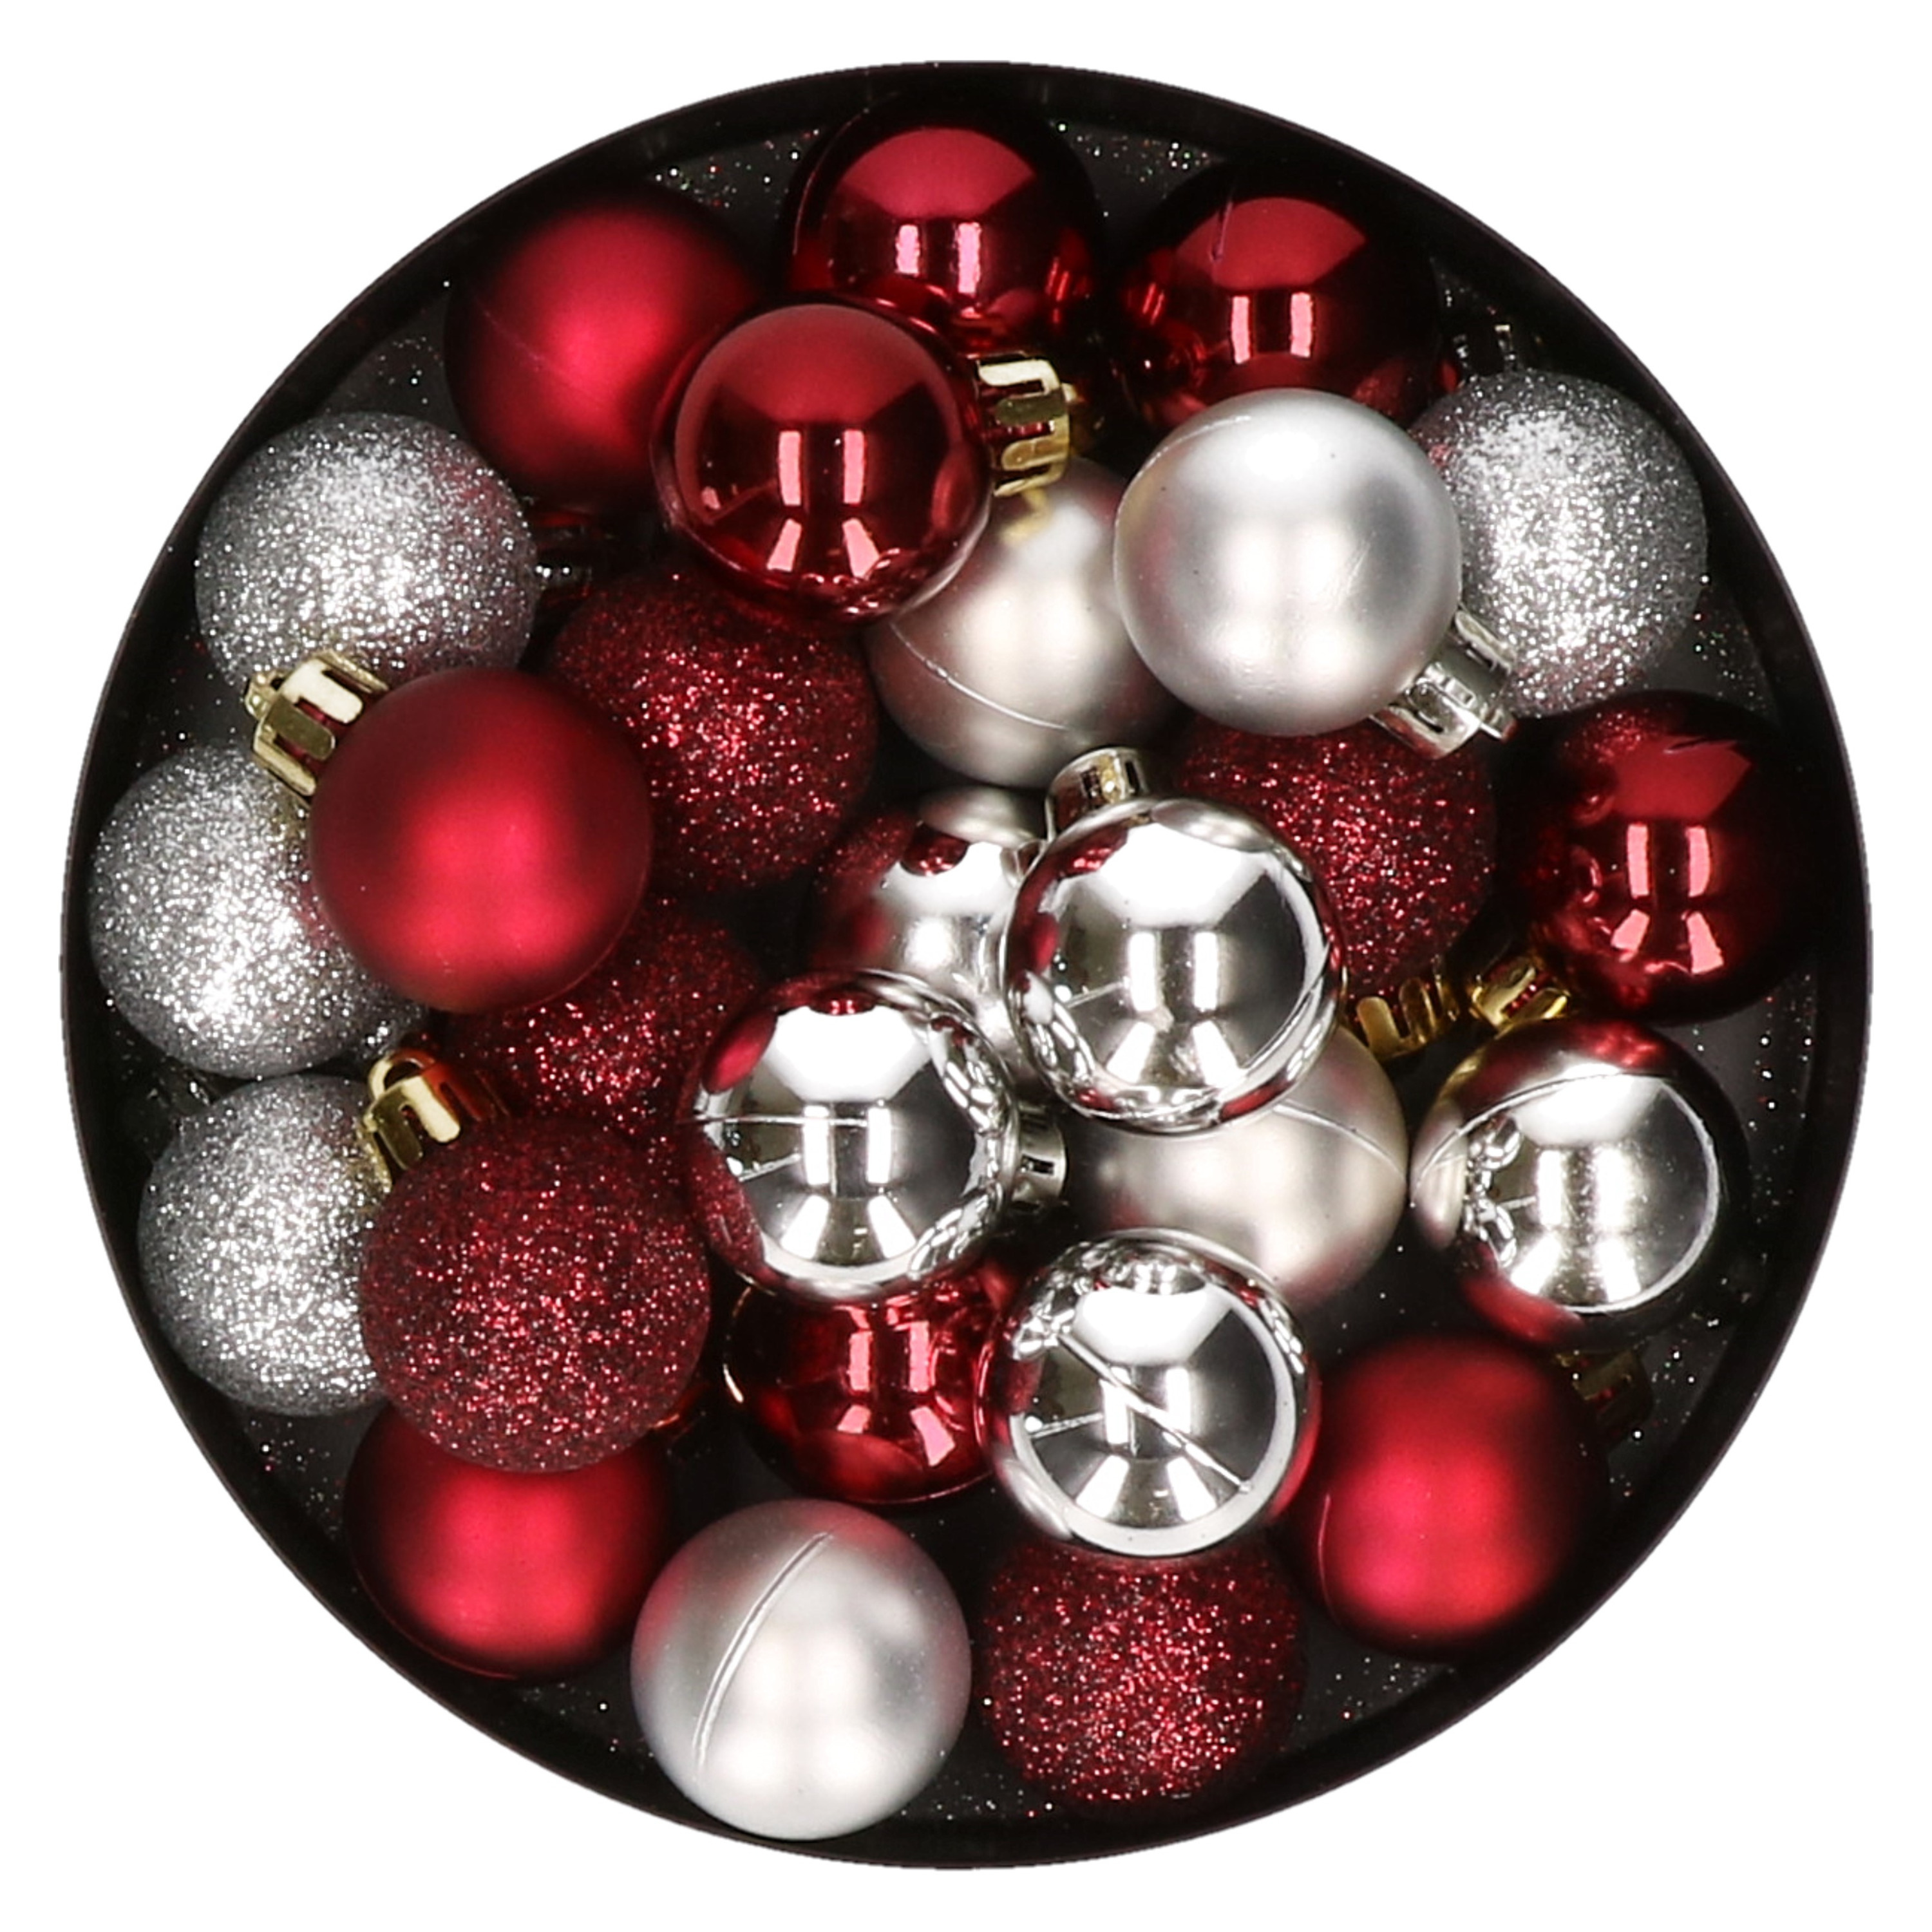 28x stuks kunststof kerstballen zilver en donkerrood mix 3 cm